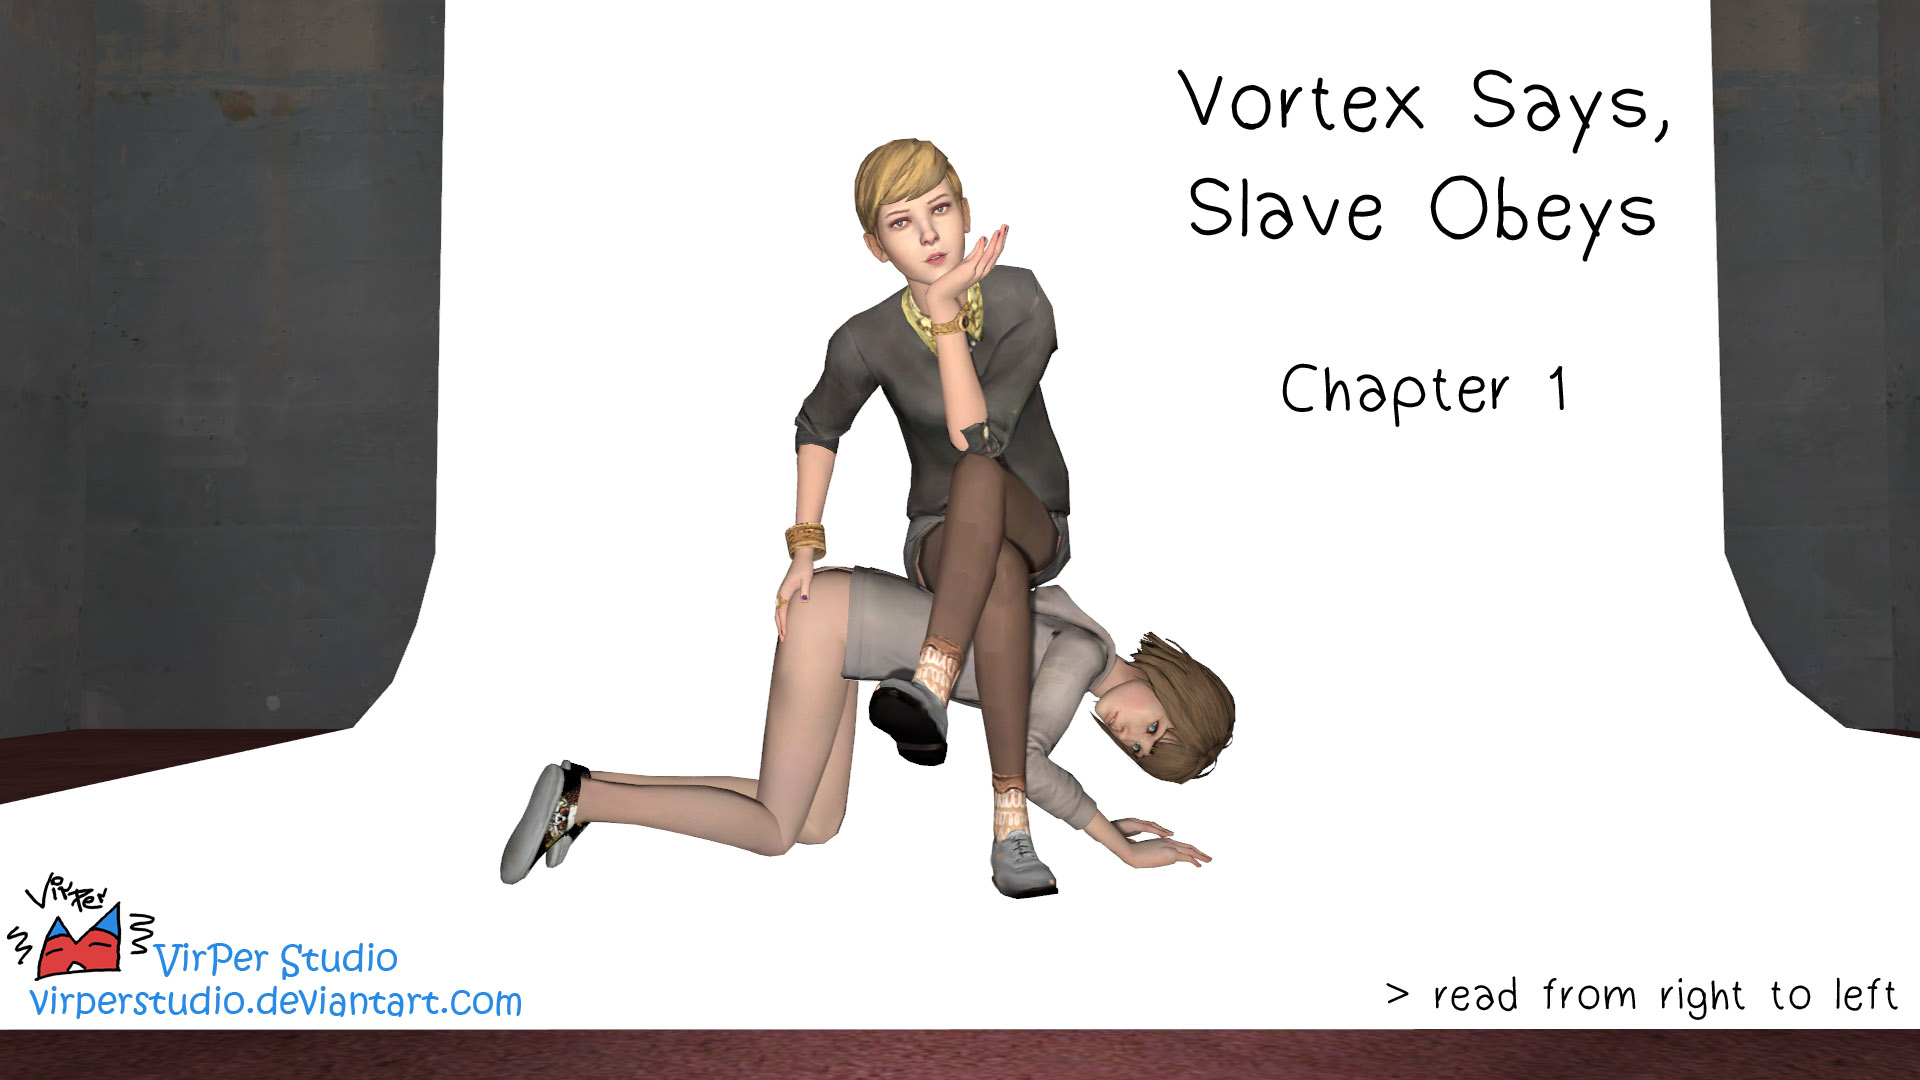 VirPerStudio - Vortex Says Slave Obeys - Chapter 1 - Life is strange